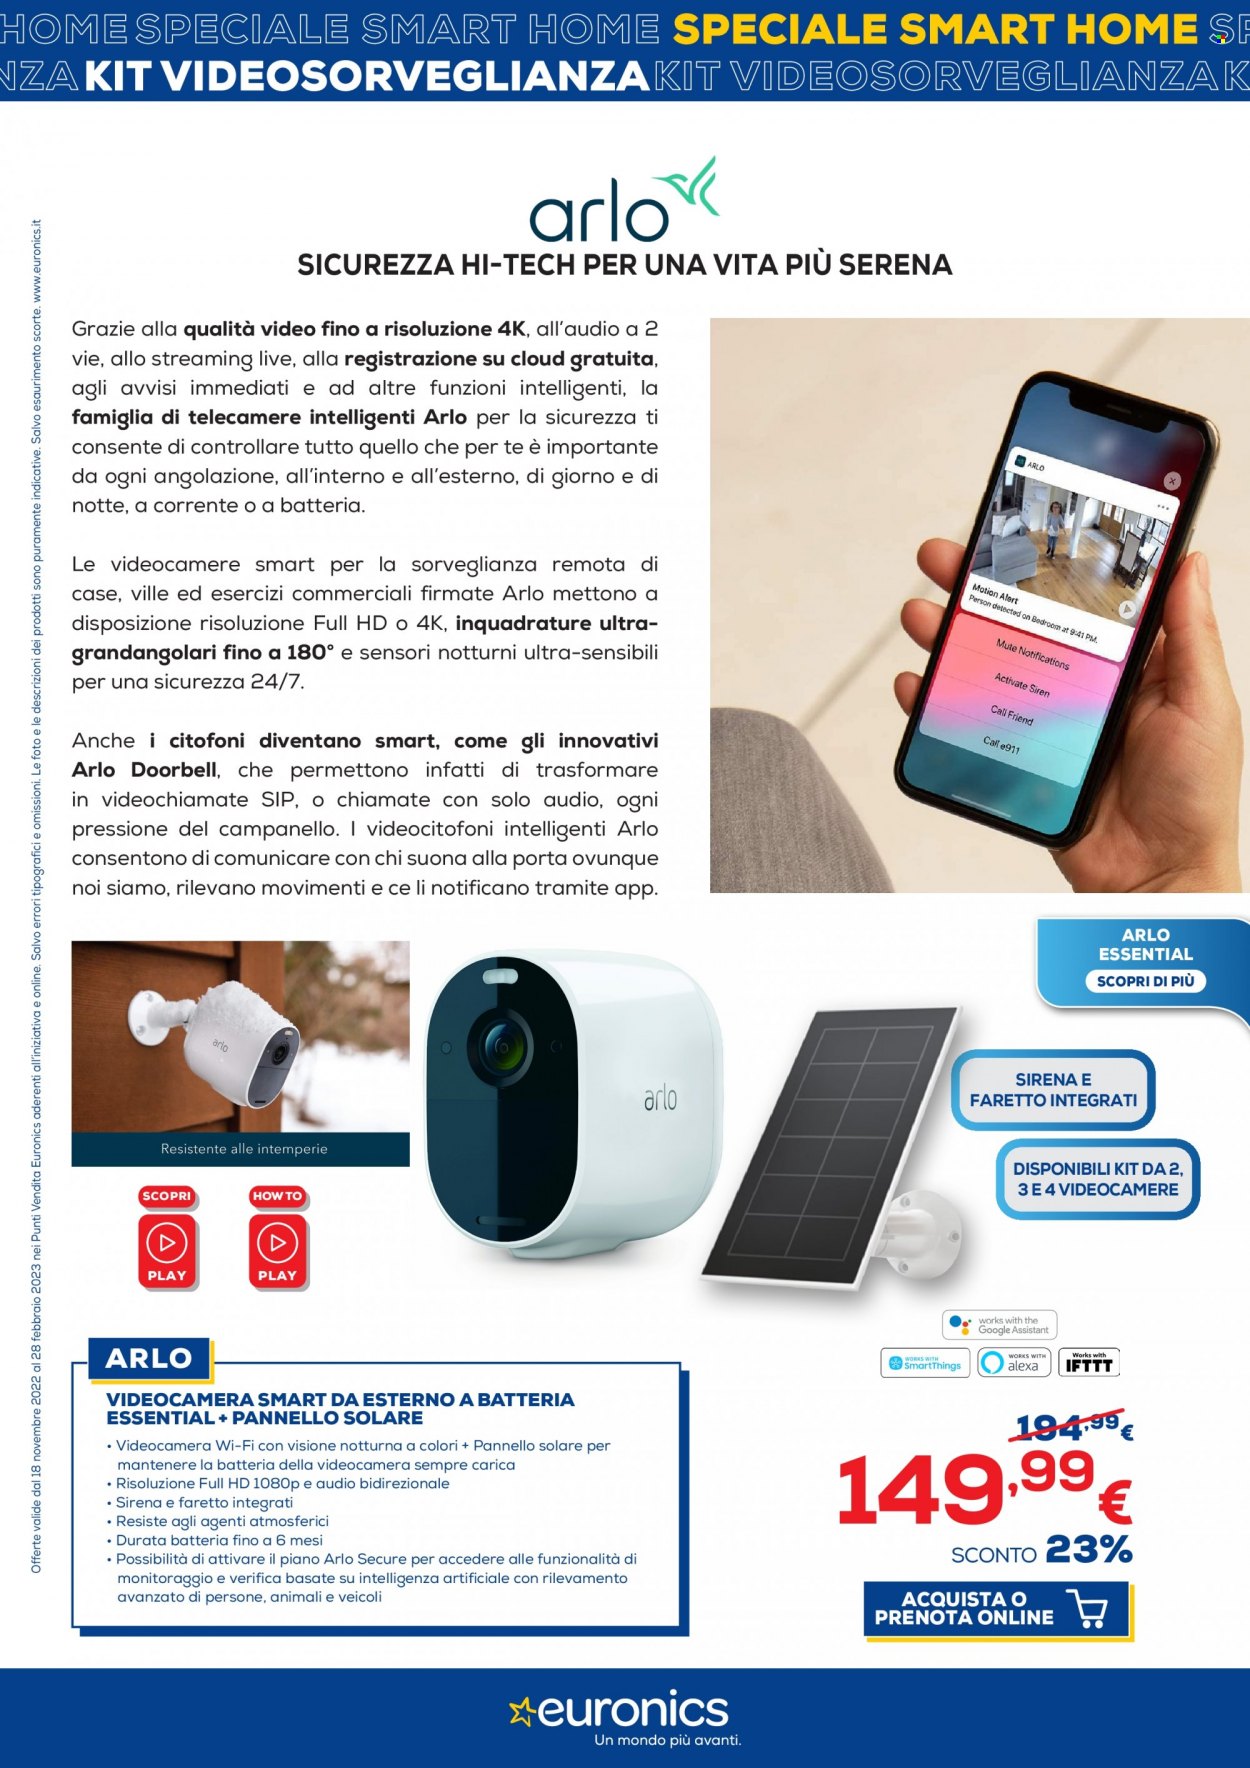 Volantino Euronics - 18/11/2022 - 28/2/2023 - Prodotti in offerta - kit videosorveglianza, videocamera, faretto. Pagina 15.